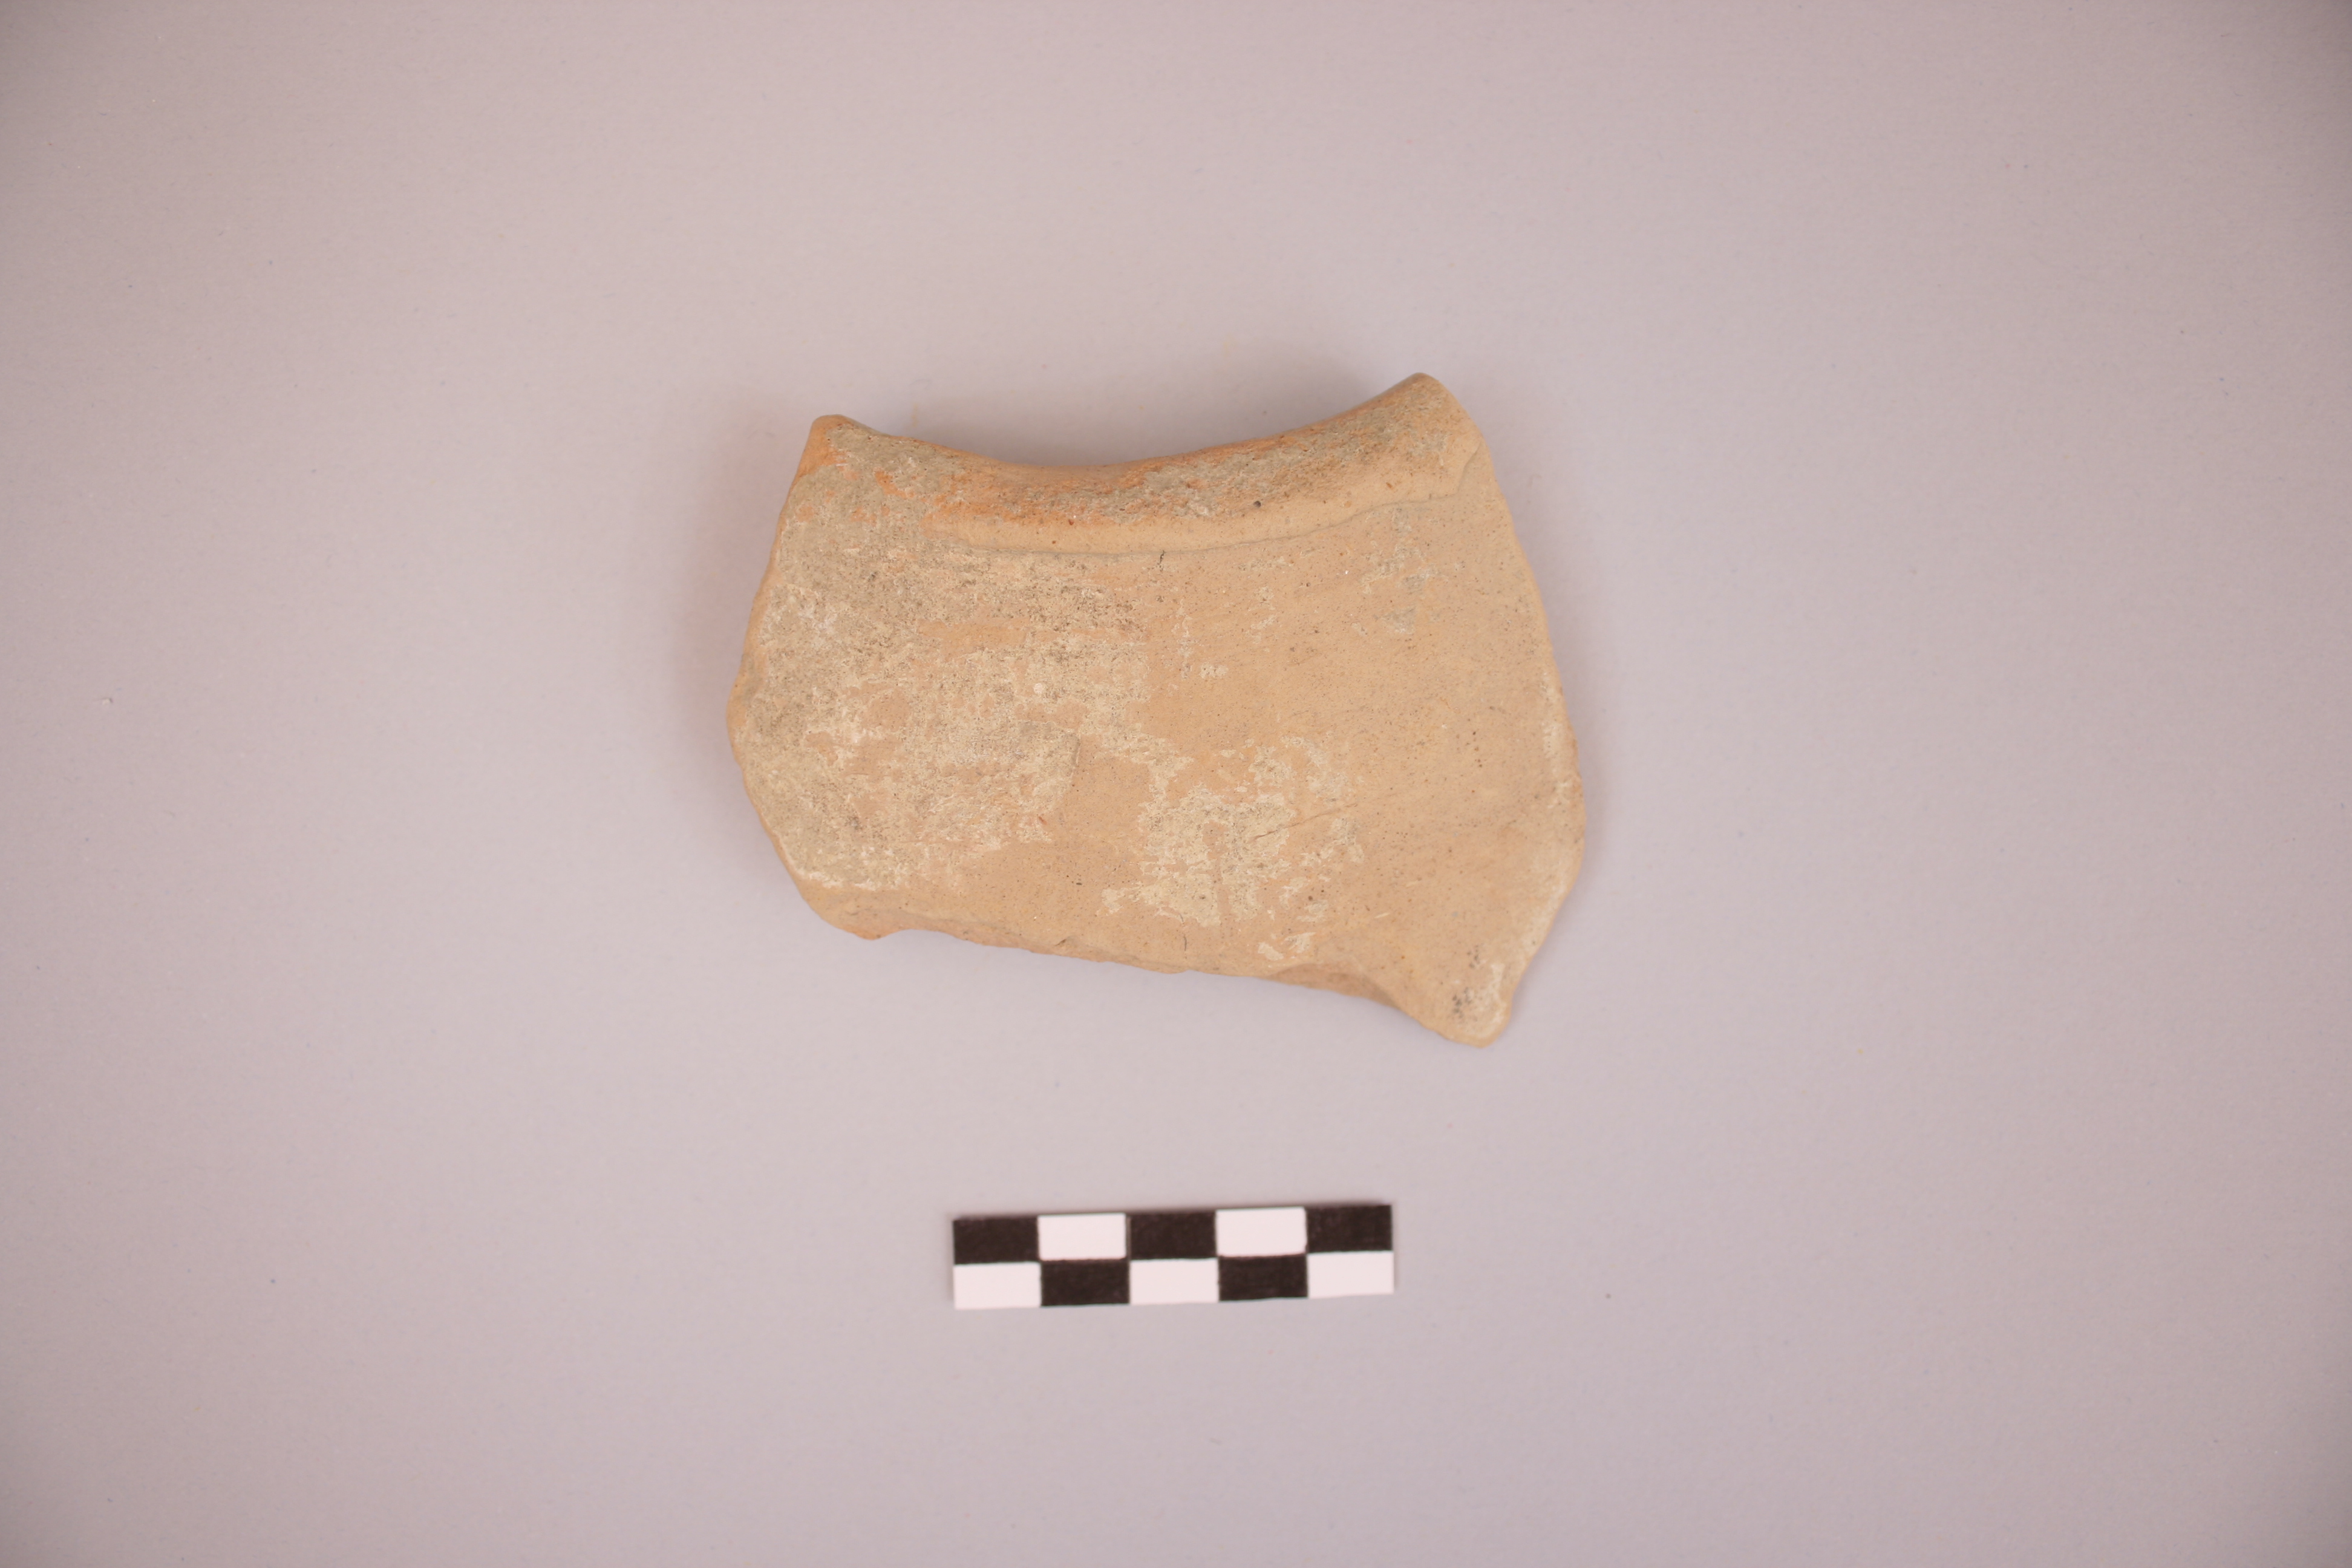 materiale proveniente da ricognizione (ceramica) (Età punico-romana)